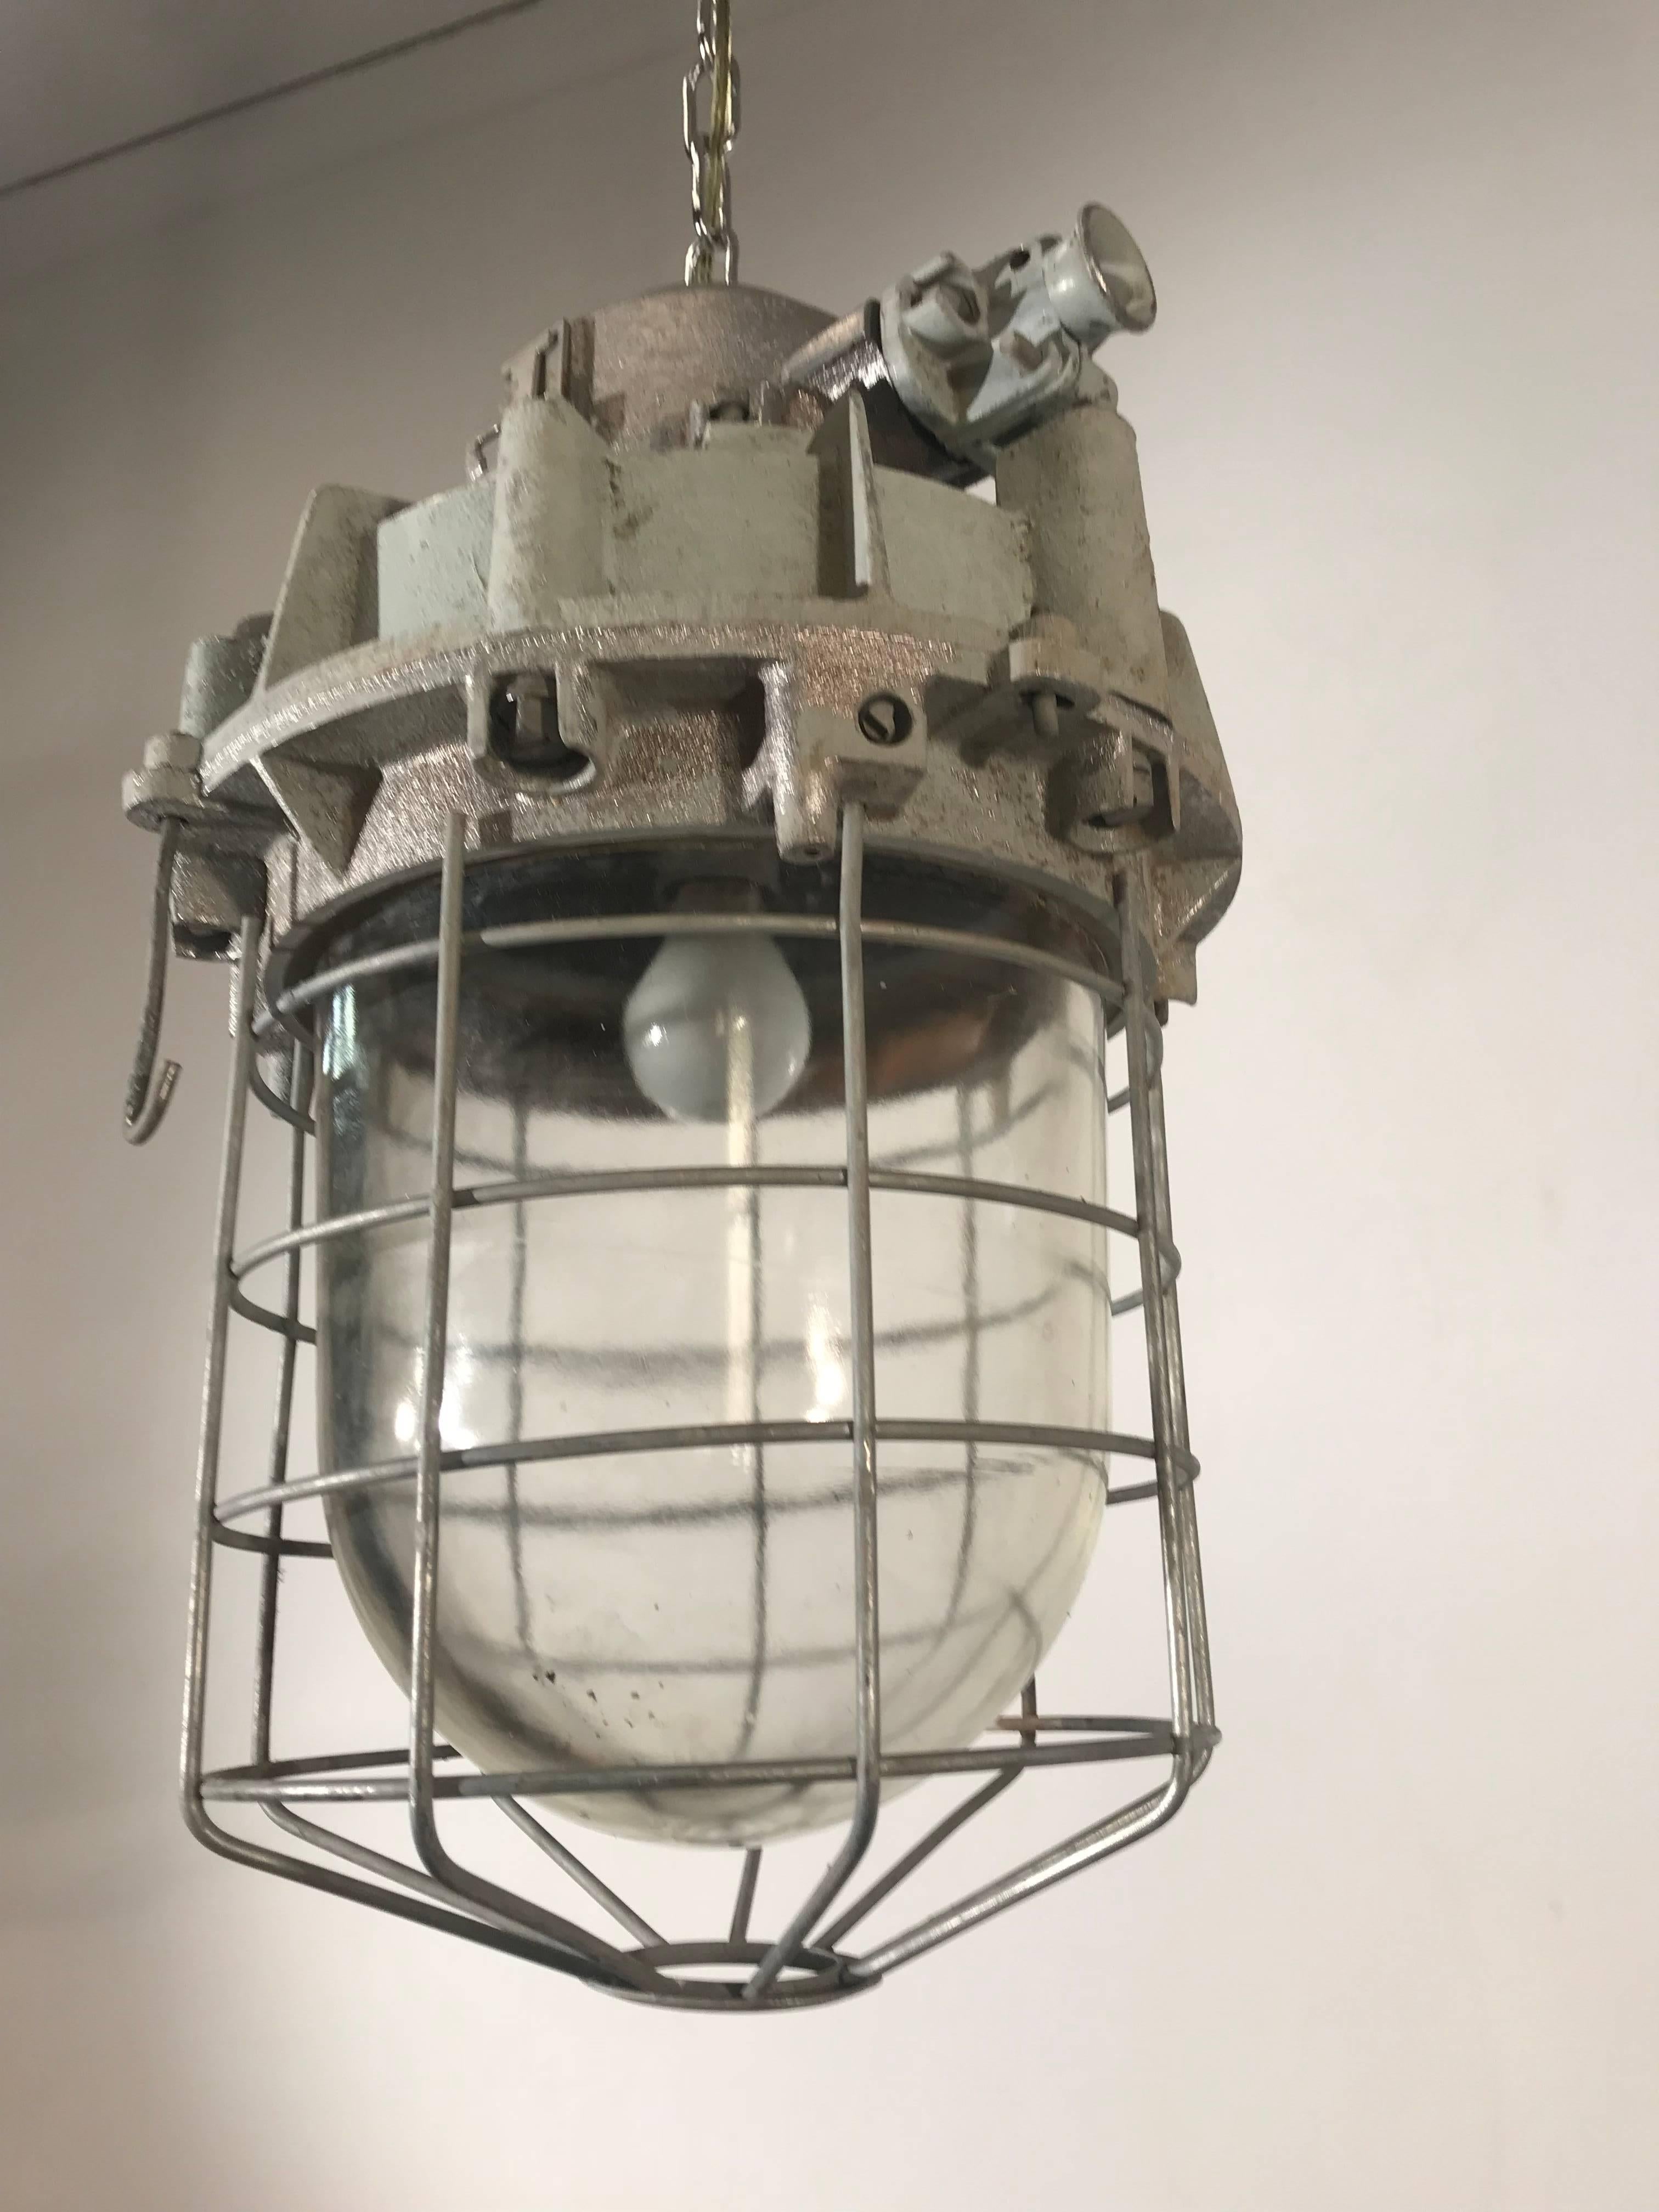 Originale, hochbelastbare industrielle Fabriklampe. 

Diese große und coole Industrial-Hängeleuchte mit ihrem originellen Glasschirm sieht wunderbar über einer Kücheninsel aus, aber es gibt viele andere Räume und Orte, an denen diese gut aussehende